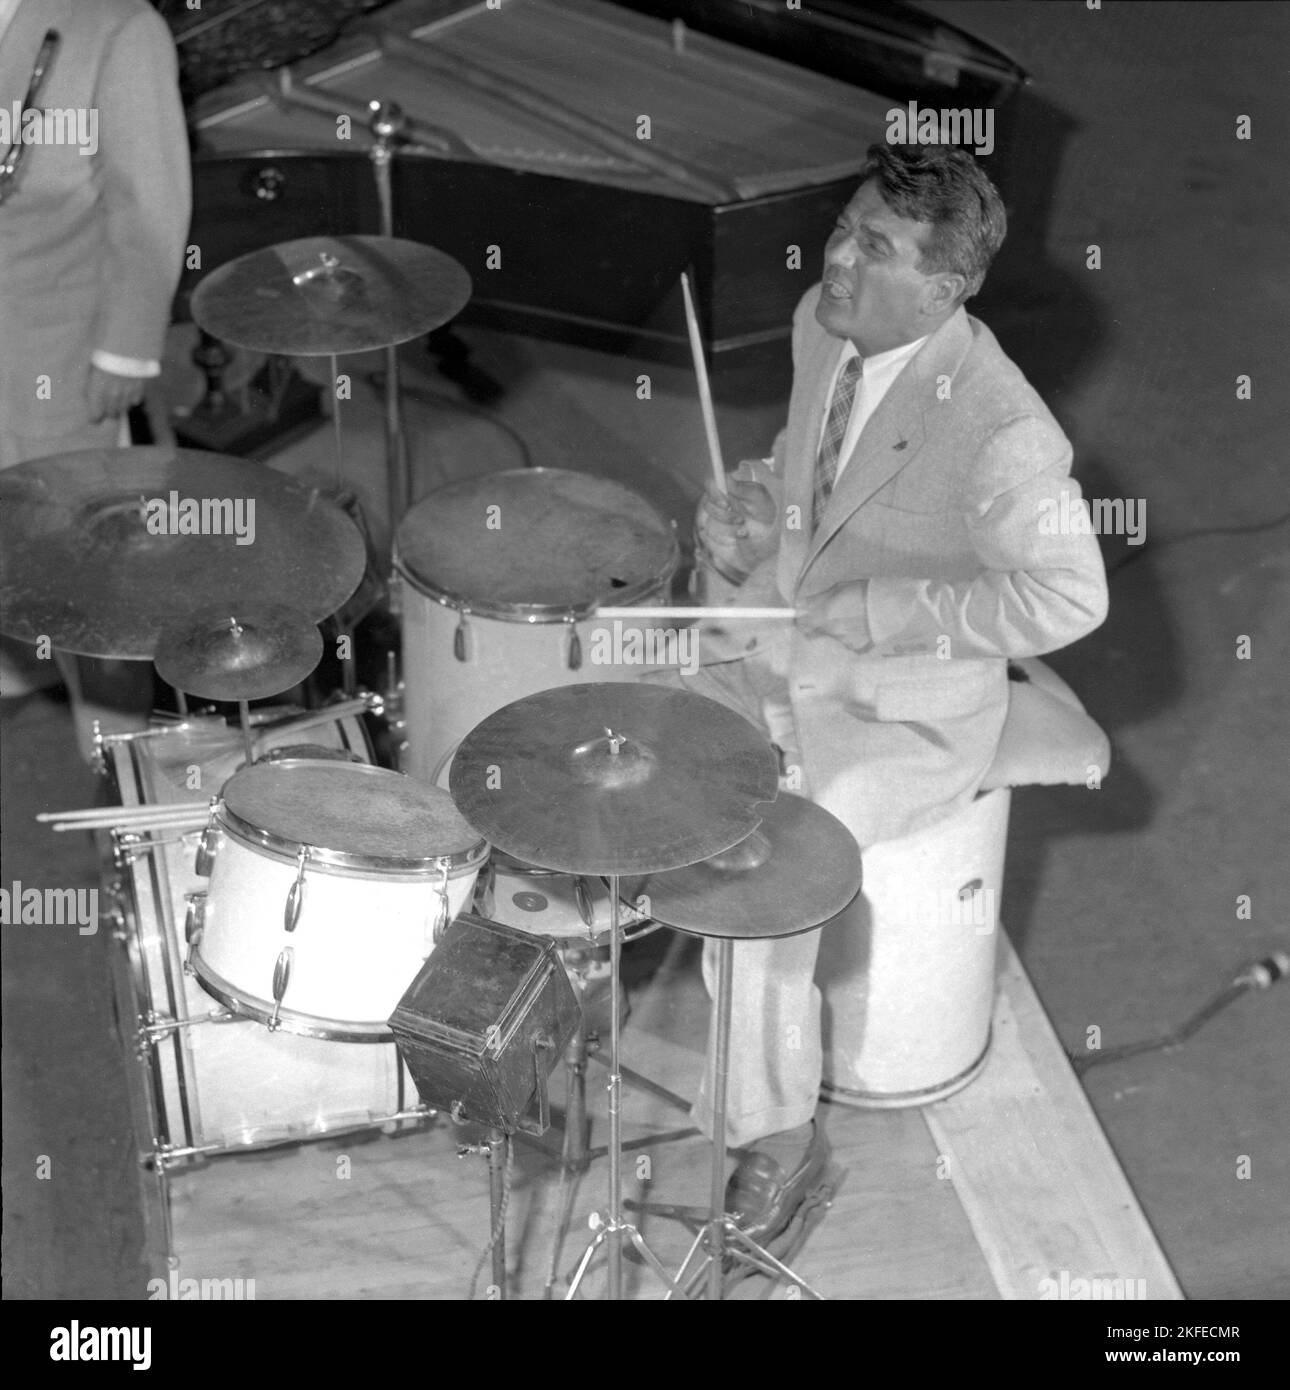 Gene Krupa. Amerikanischer Jazz-Schlagzeuger, Bandleader und Komponist. Geboren am 15 1909. januar, gestorben am 16 1973. oktober. Er war bekannt dafür, mit Energie und Showmanship aufzutreten. Krupa wird vom Modern Drummer Magazine als 'der Gründungsvater des modernen Drumsets' angesehen. Er war der erste Schlagzeuger, der 1978 in die moderne Drummer Hall of Fame aufgenommen wurde. Abgebildet während der Aufführung von i Stockholm Schweden im Juli 1952 Conard Ref 2073 Stockfoto